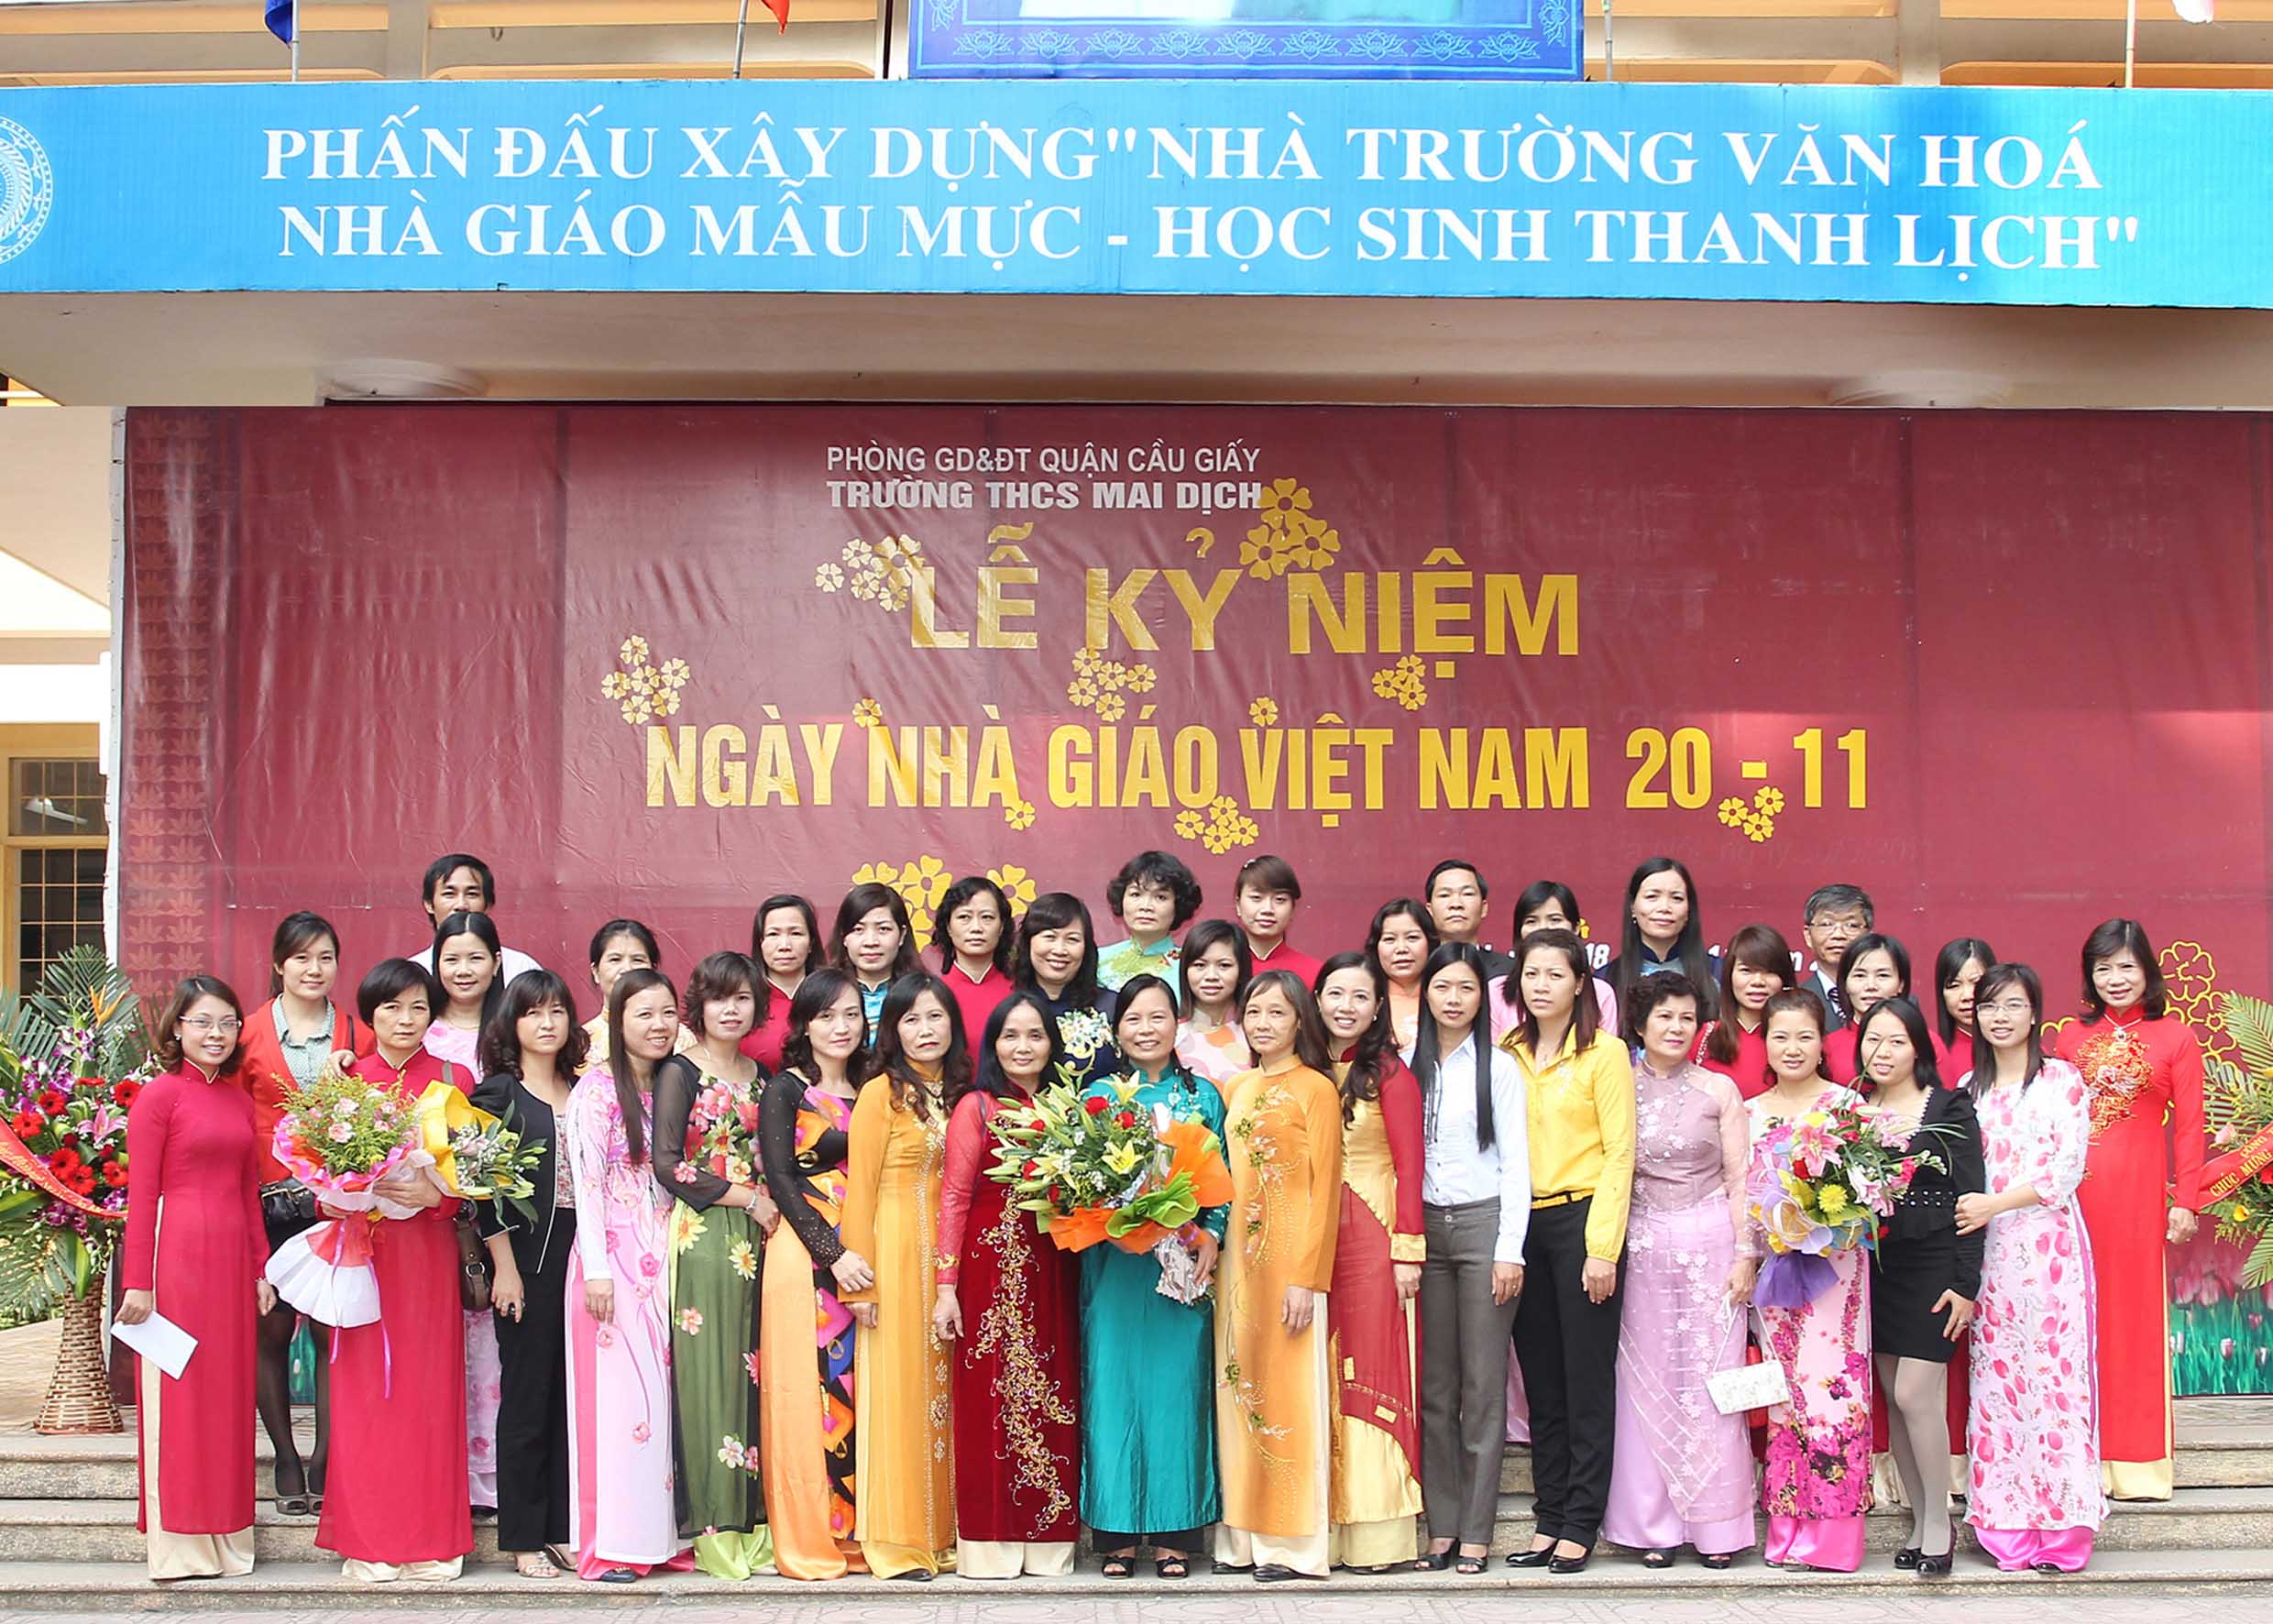 Dịch vụ chụp ảnh ngày nhà giáo Việt Nam